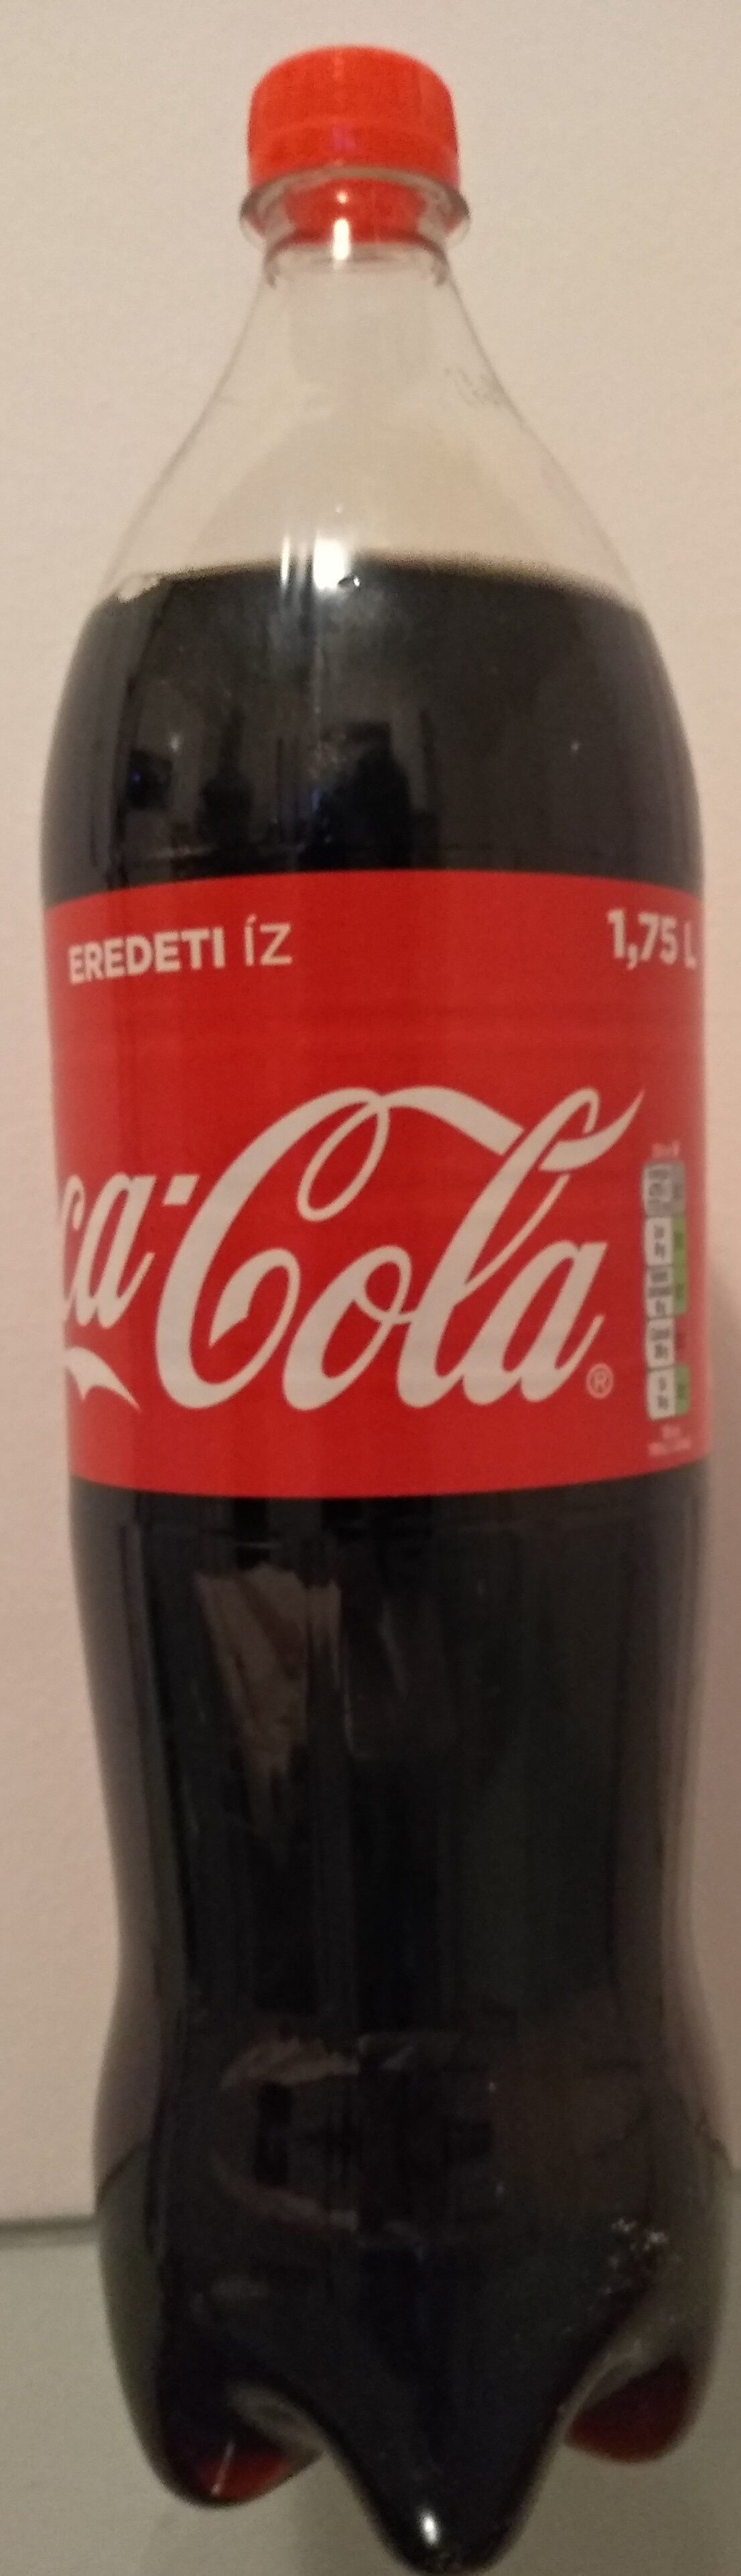 Coca-Cola Sabor Original - Product - en